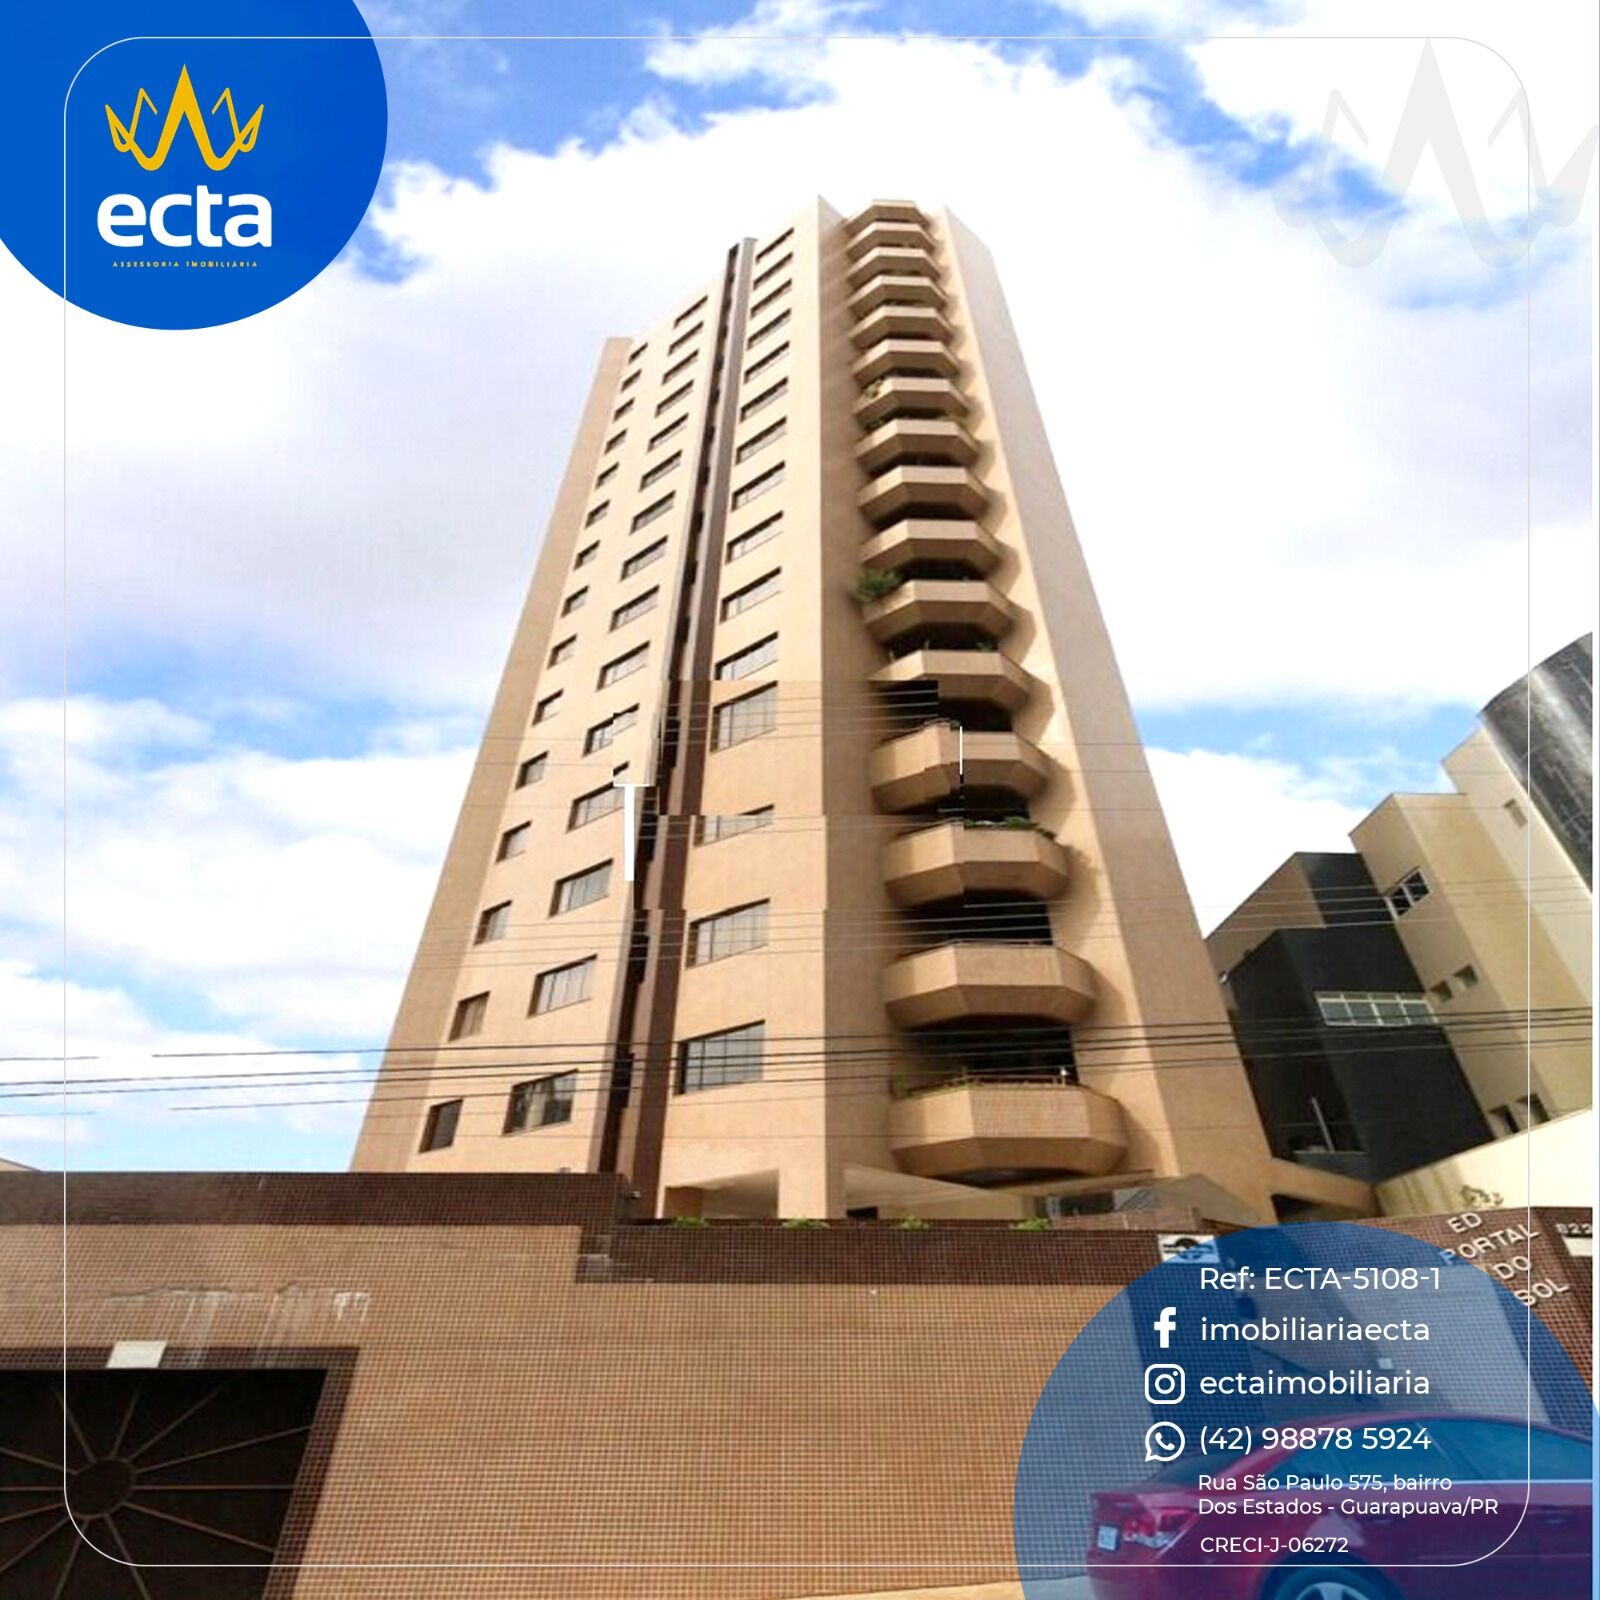 Apartamento com 4 dormitórios à venda,525.57 m , Centro, GUARA...